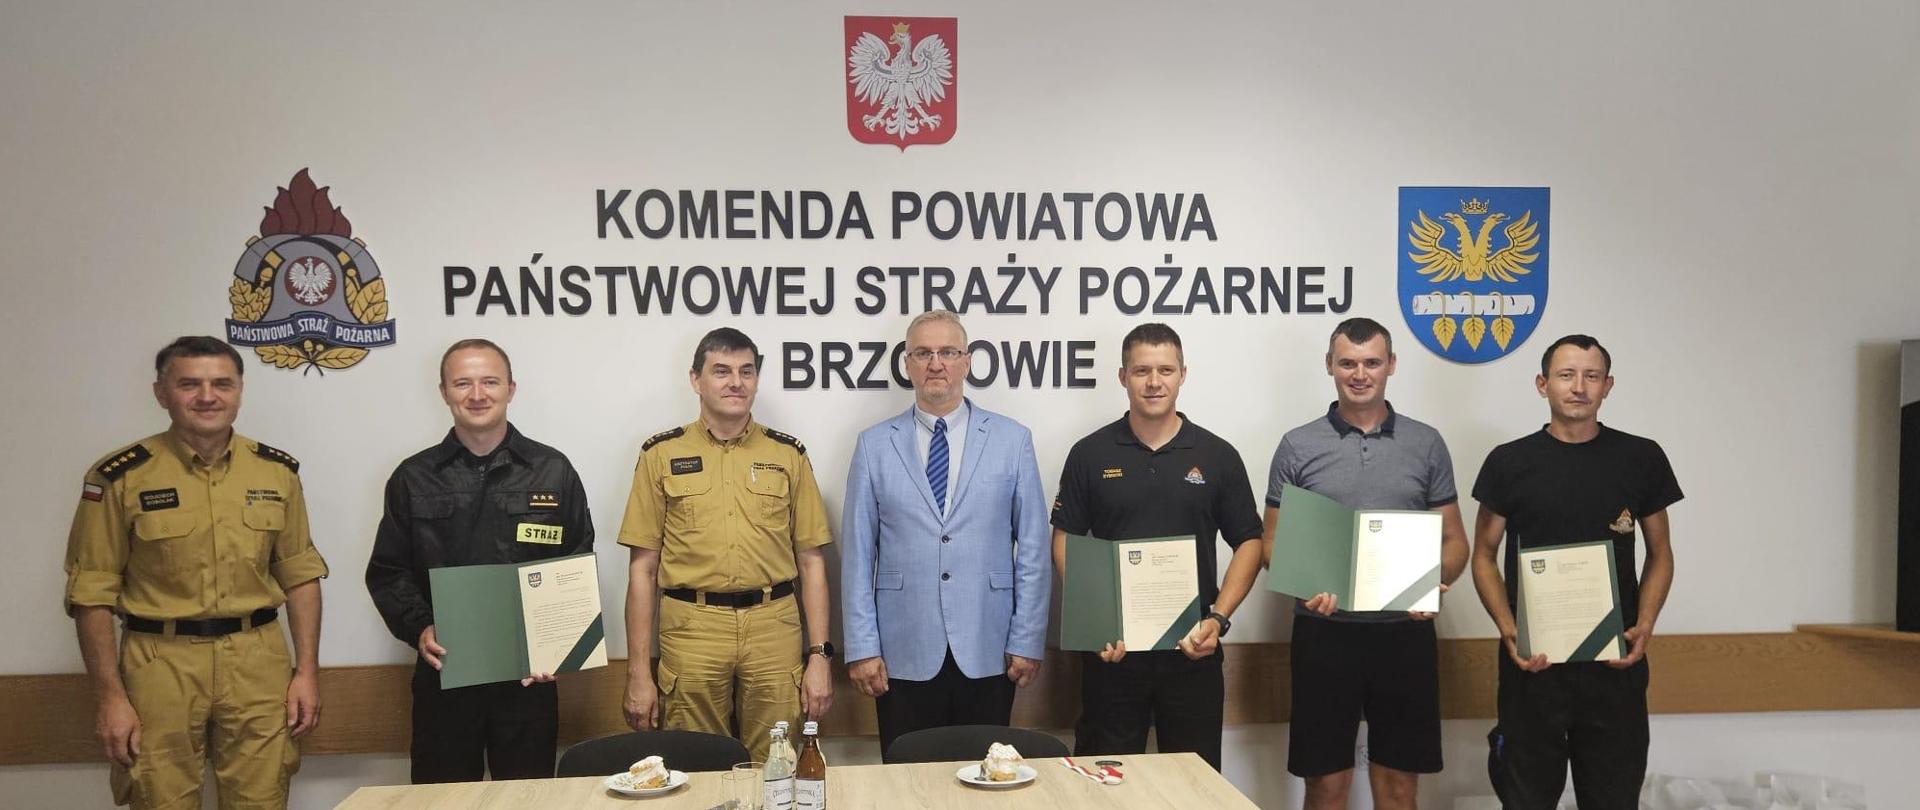 Kolorowa fotografia wykonana w pomieszczeniu. Przedstawia grupę strażaków w strojach służbowych i cywilnych po wręczeniu listów gratulacyjnych przez starostę brzozowskiego i komendanta PSP w Brzozowie.